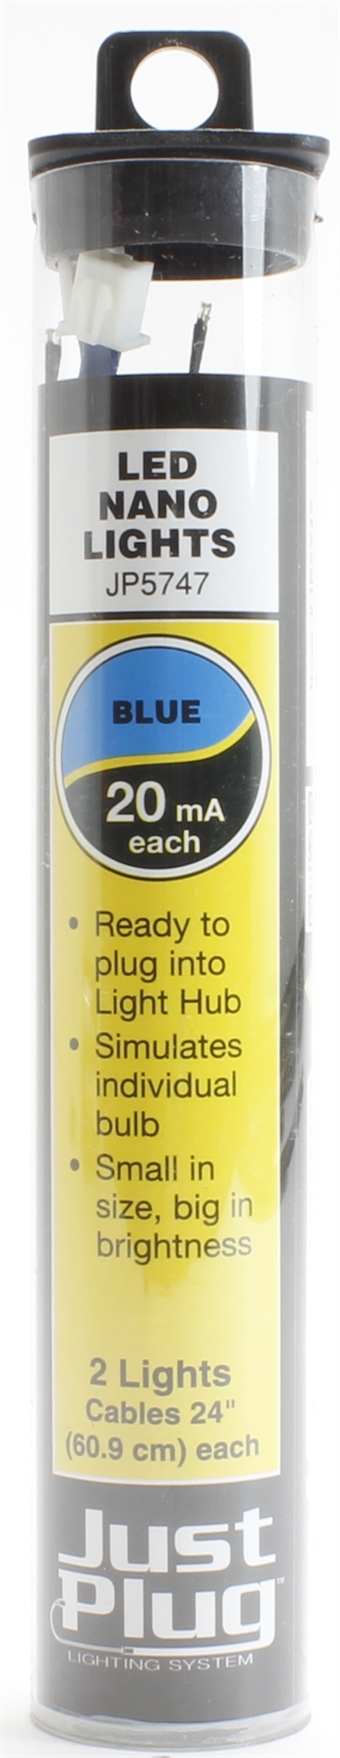 Blue LED nano lights for Just Plug lighting system